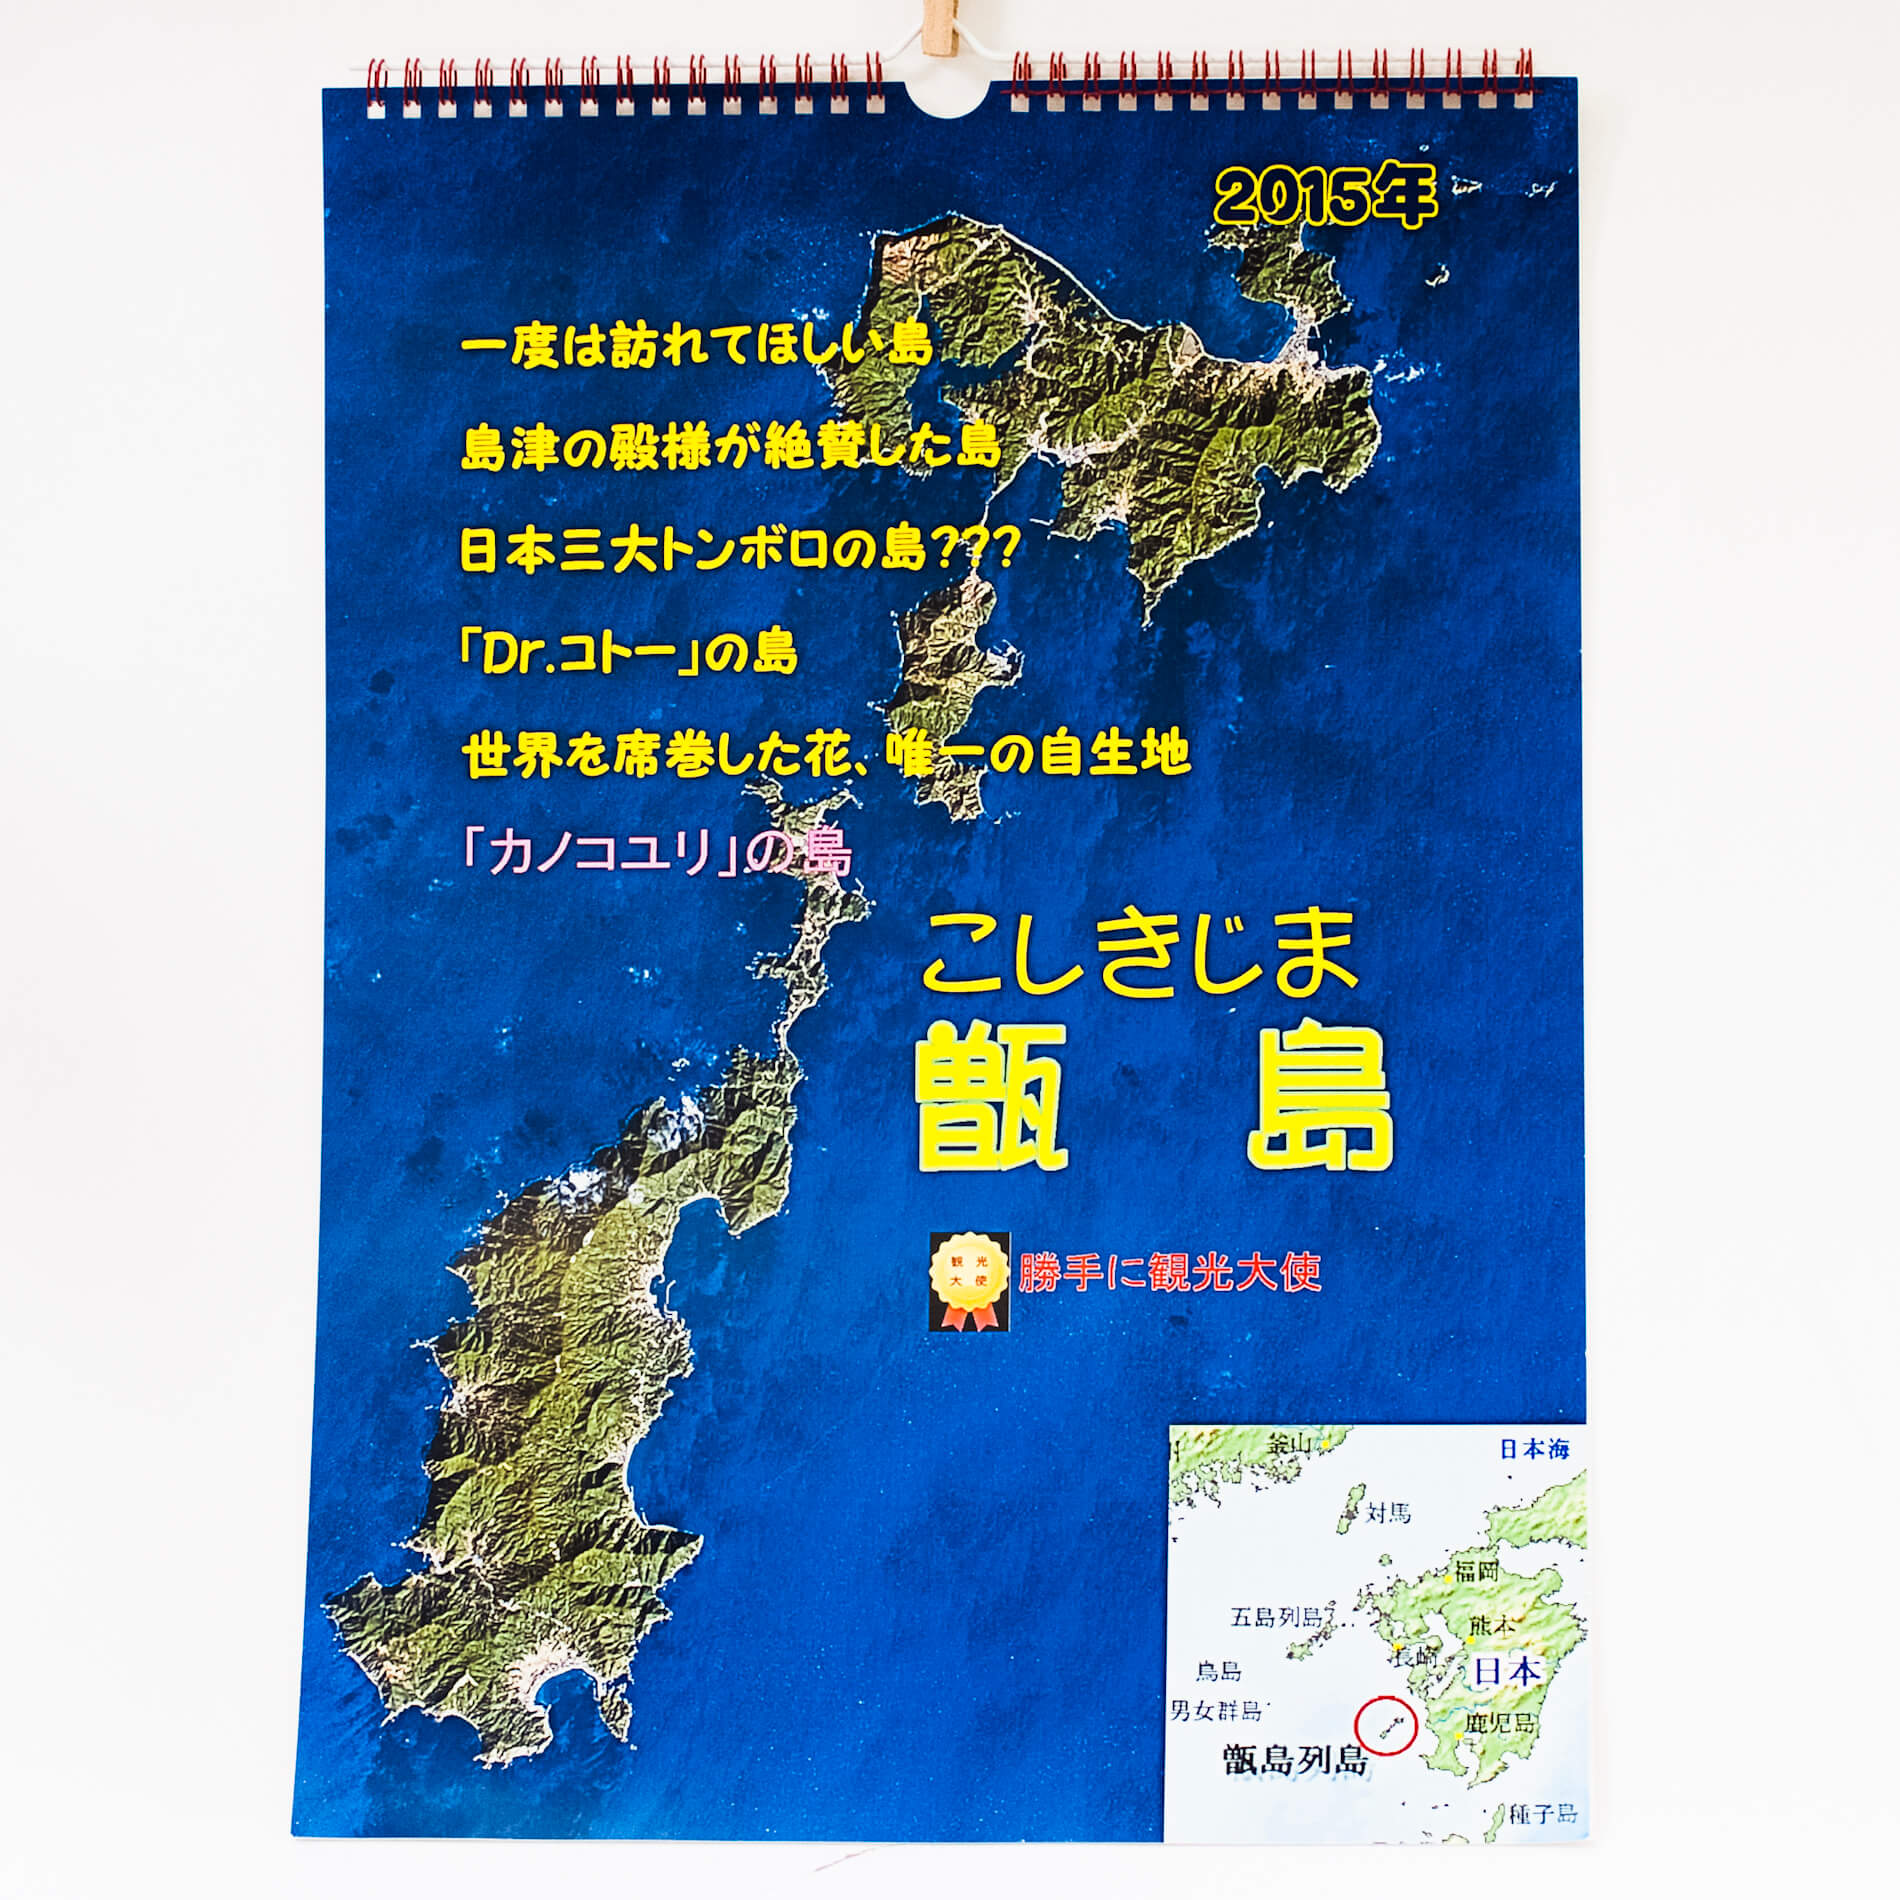 「後藤　和夫 様」製作のオリジナルカレンダー